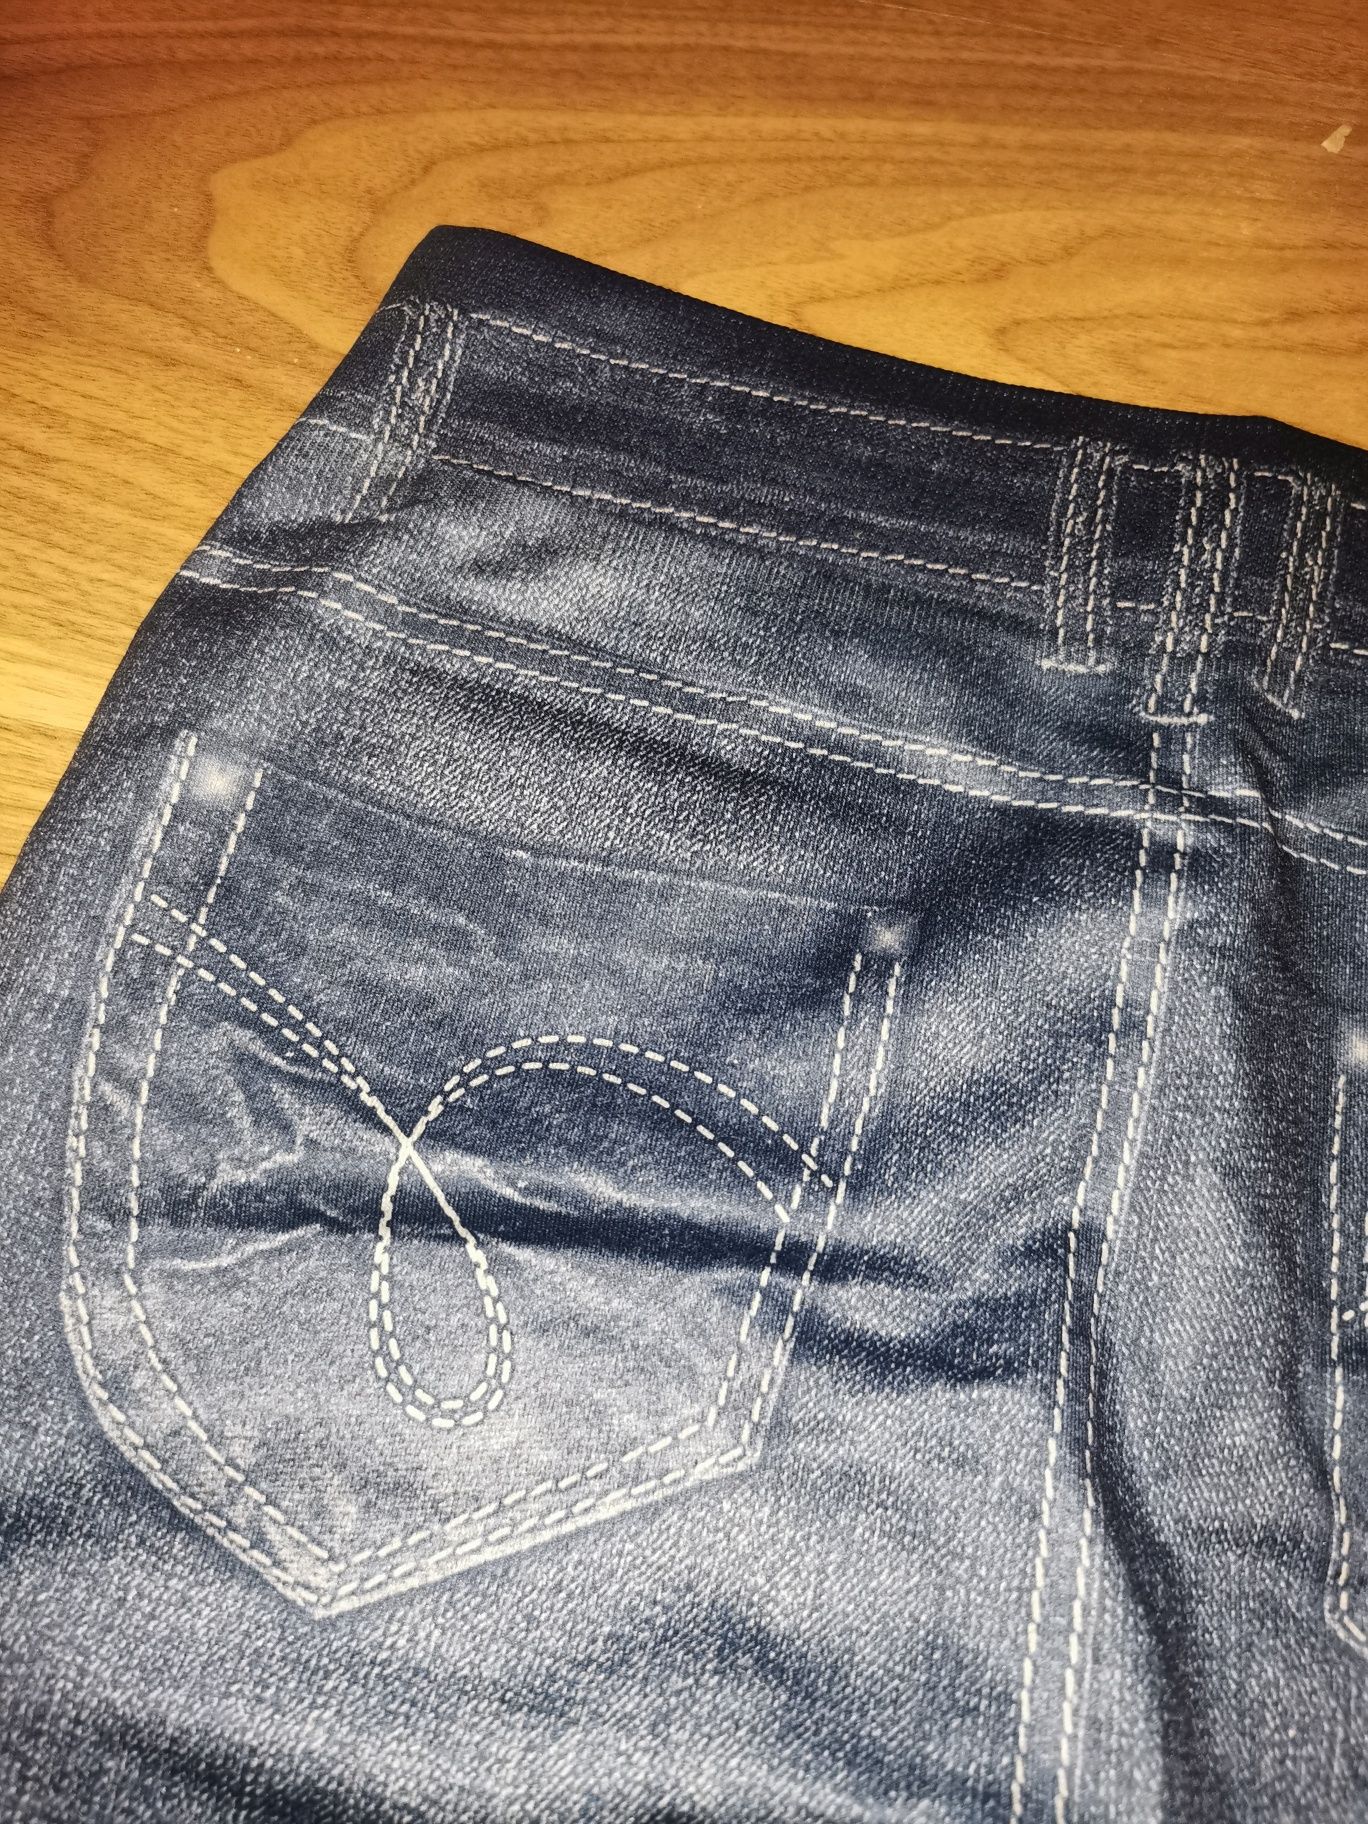 Legginsy damskie jeansowe obcisłe 36 S śliskie dopasowane